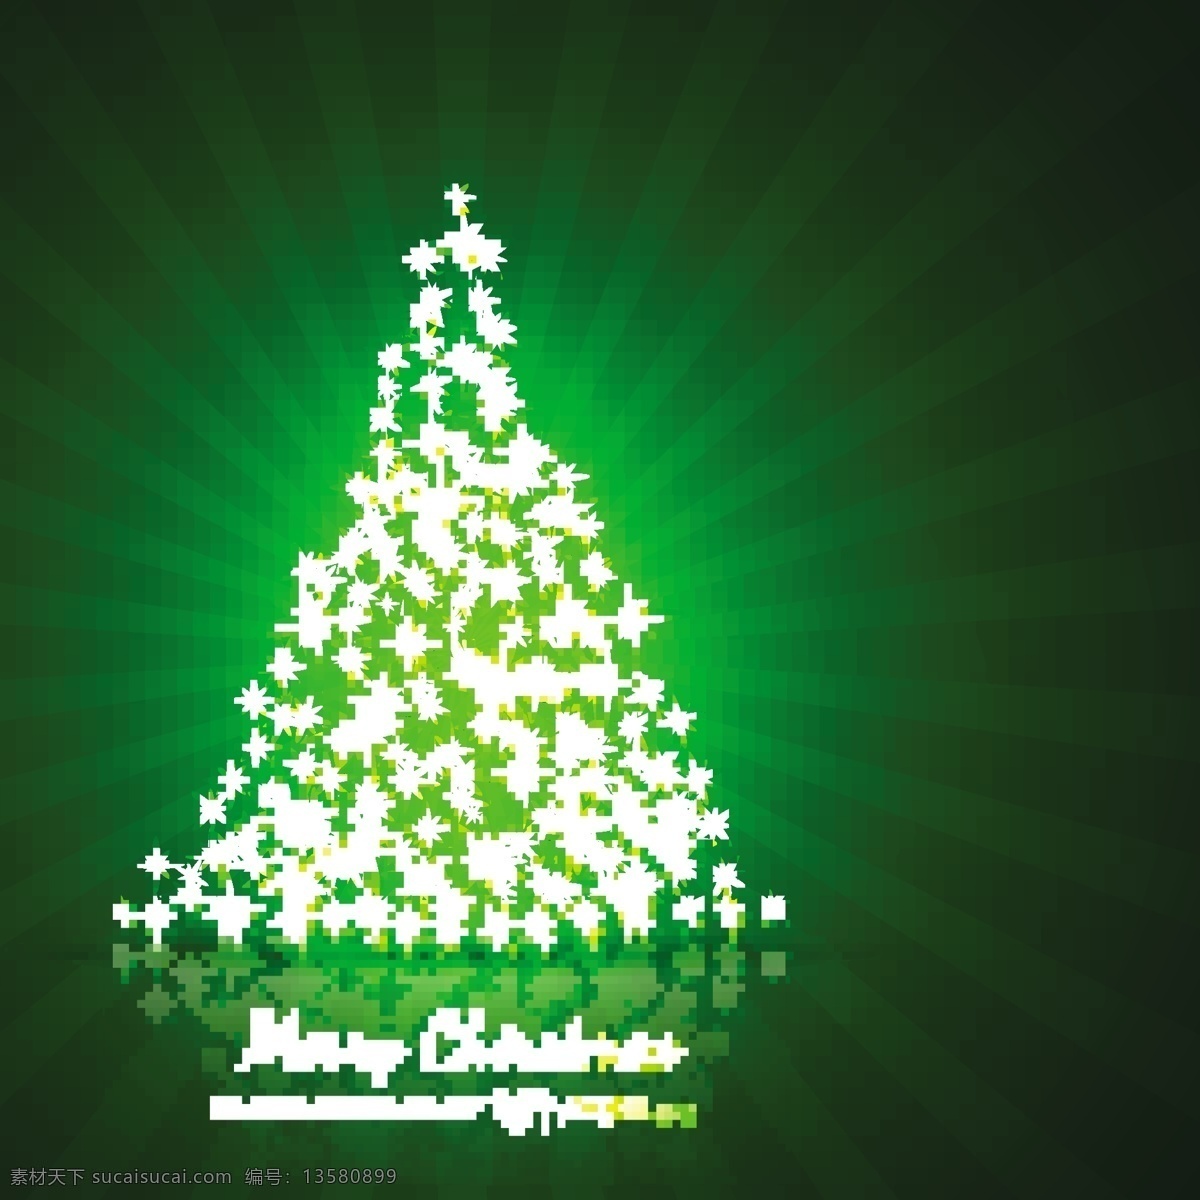 圣诞树 形状 星星 闪烁 绿色 背景 背景壁纸 庆典和聚会 圣诞节 设计元素 节假日 季节性 模板和模型